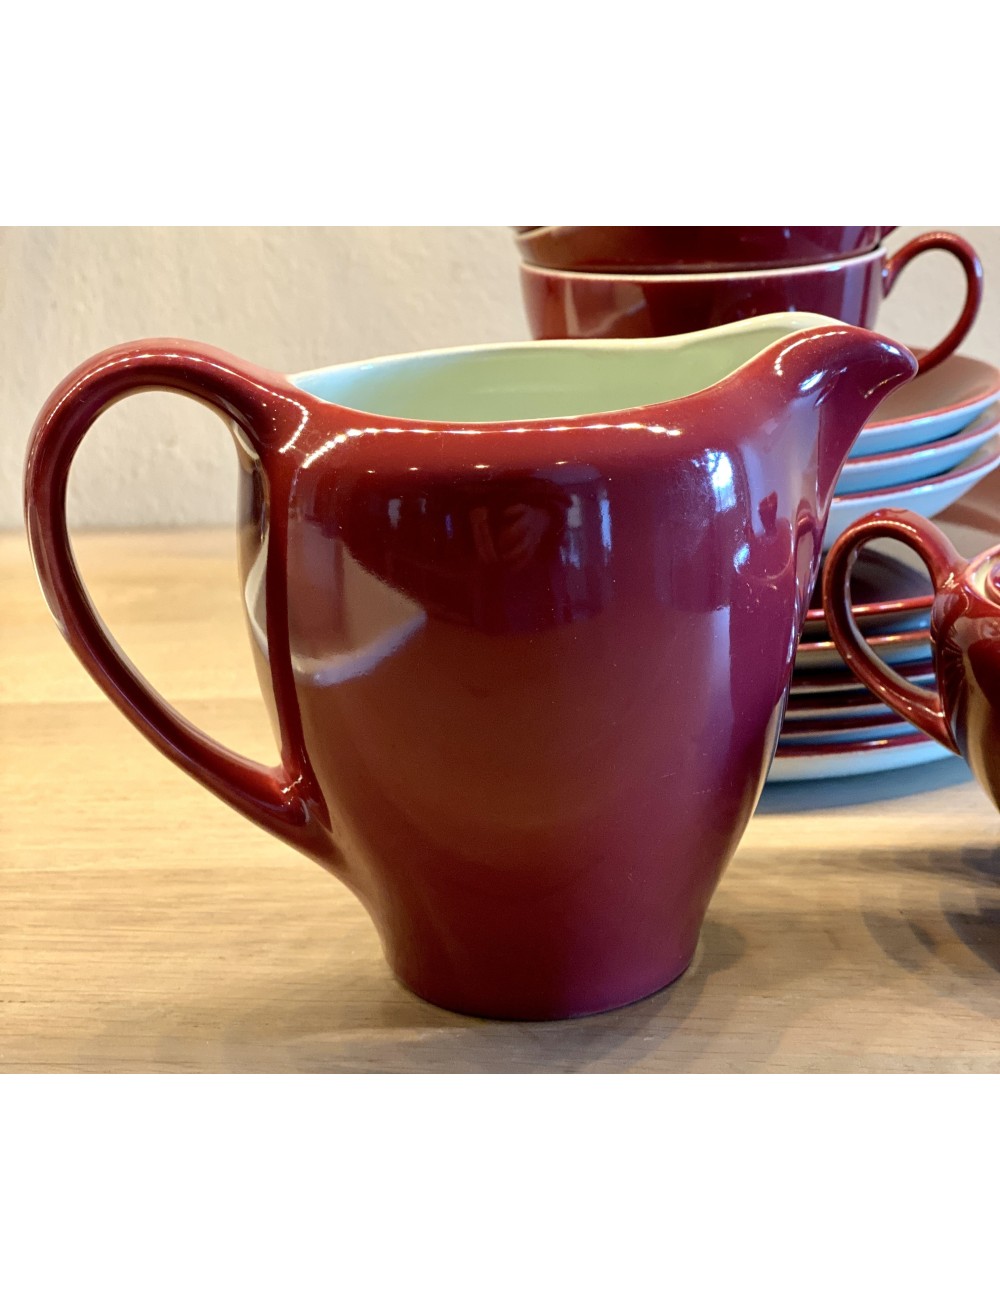 Melkkannetje - Royal Goedewaagen Potteries Gouda - bordeaux rood met licht groenige binnenkant